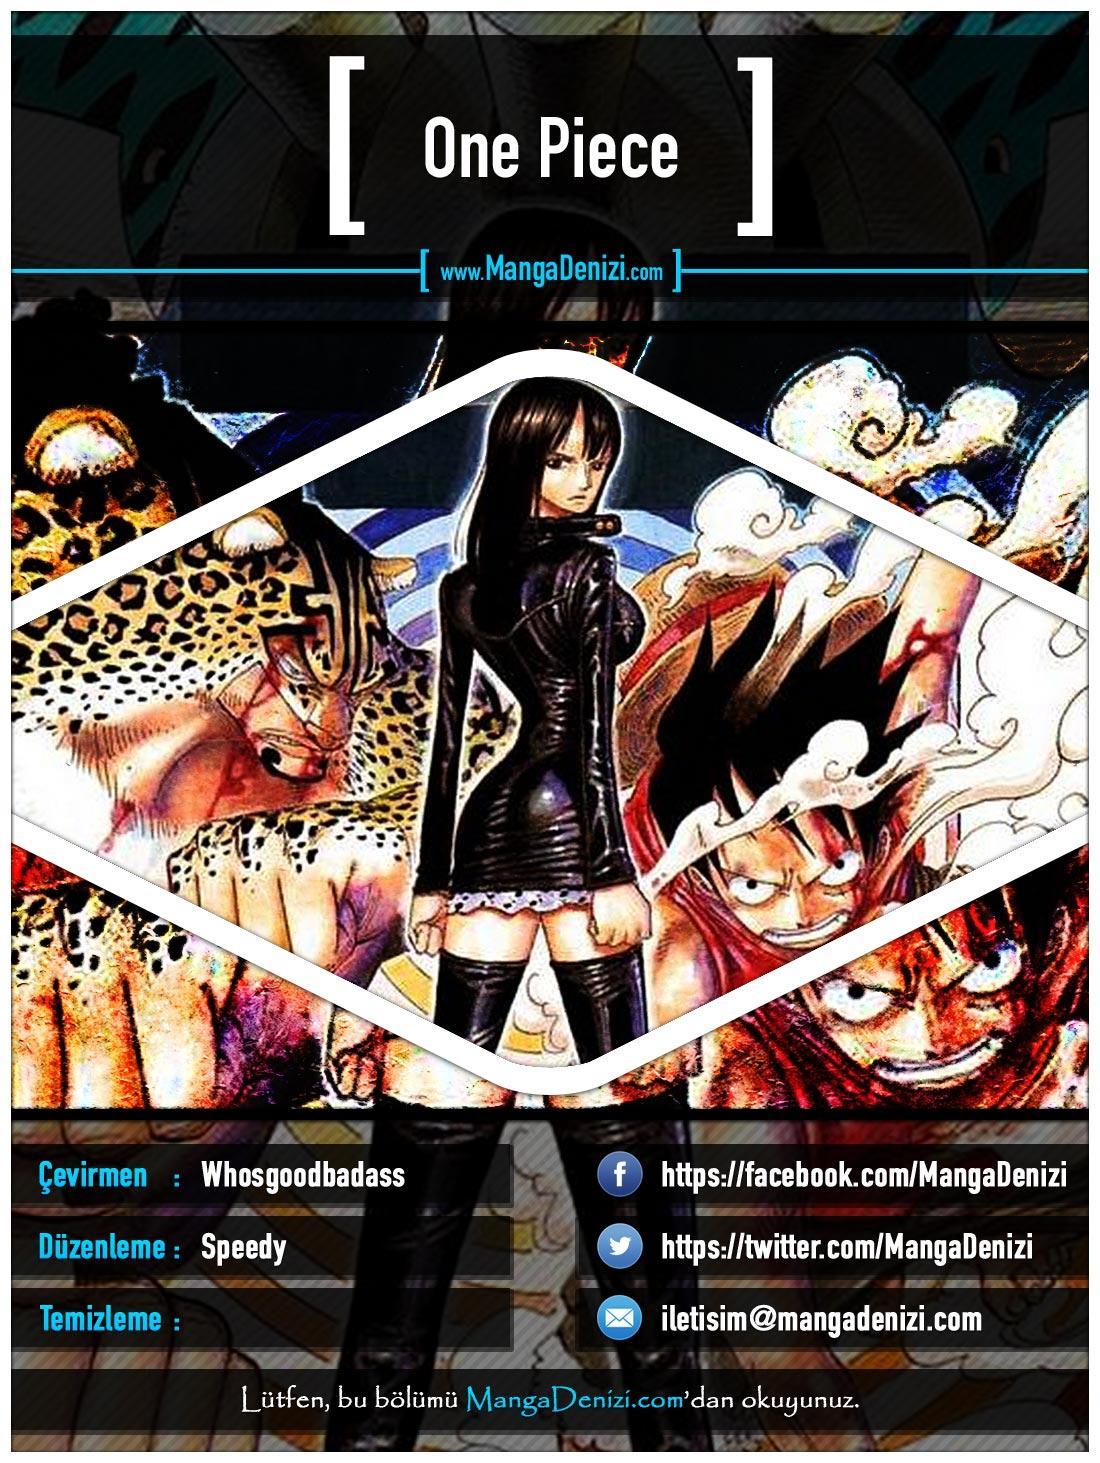 One Piece [Renkli] mangasının 0426 bölümünün 1. sayfasını okuyorsunuz.